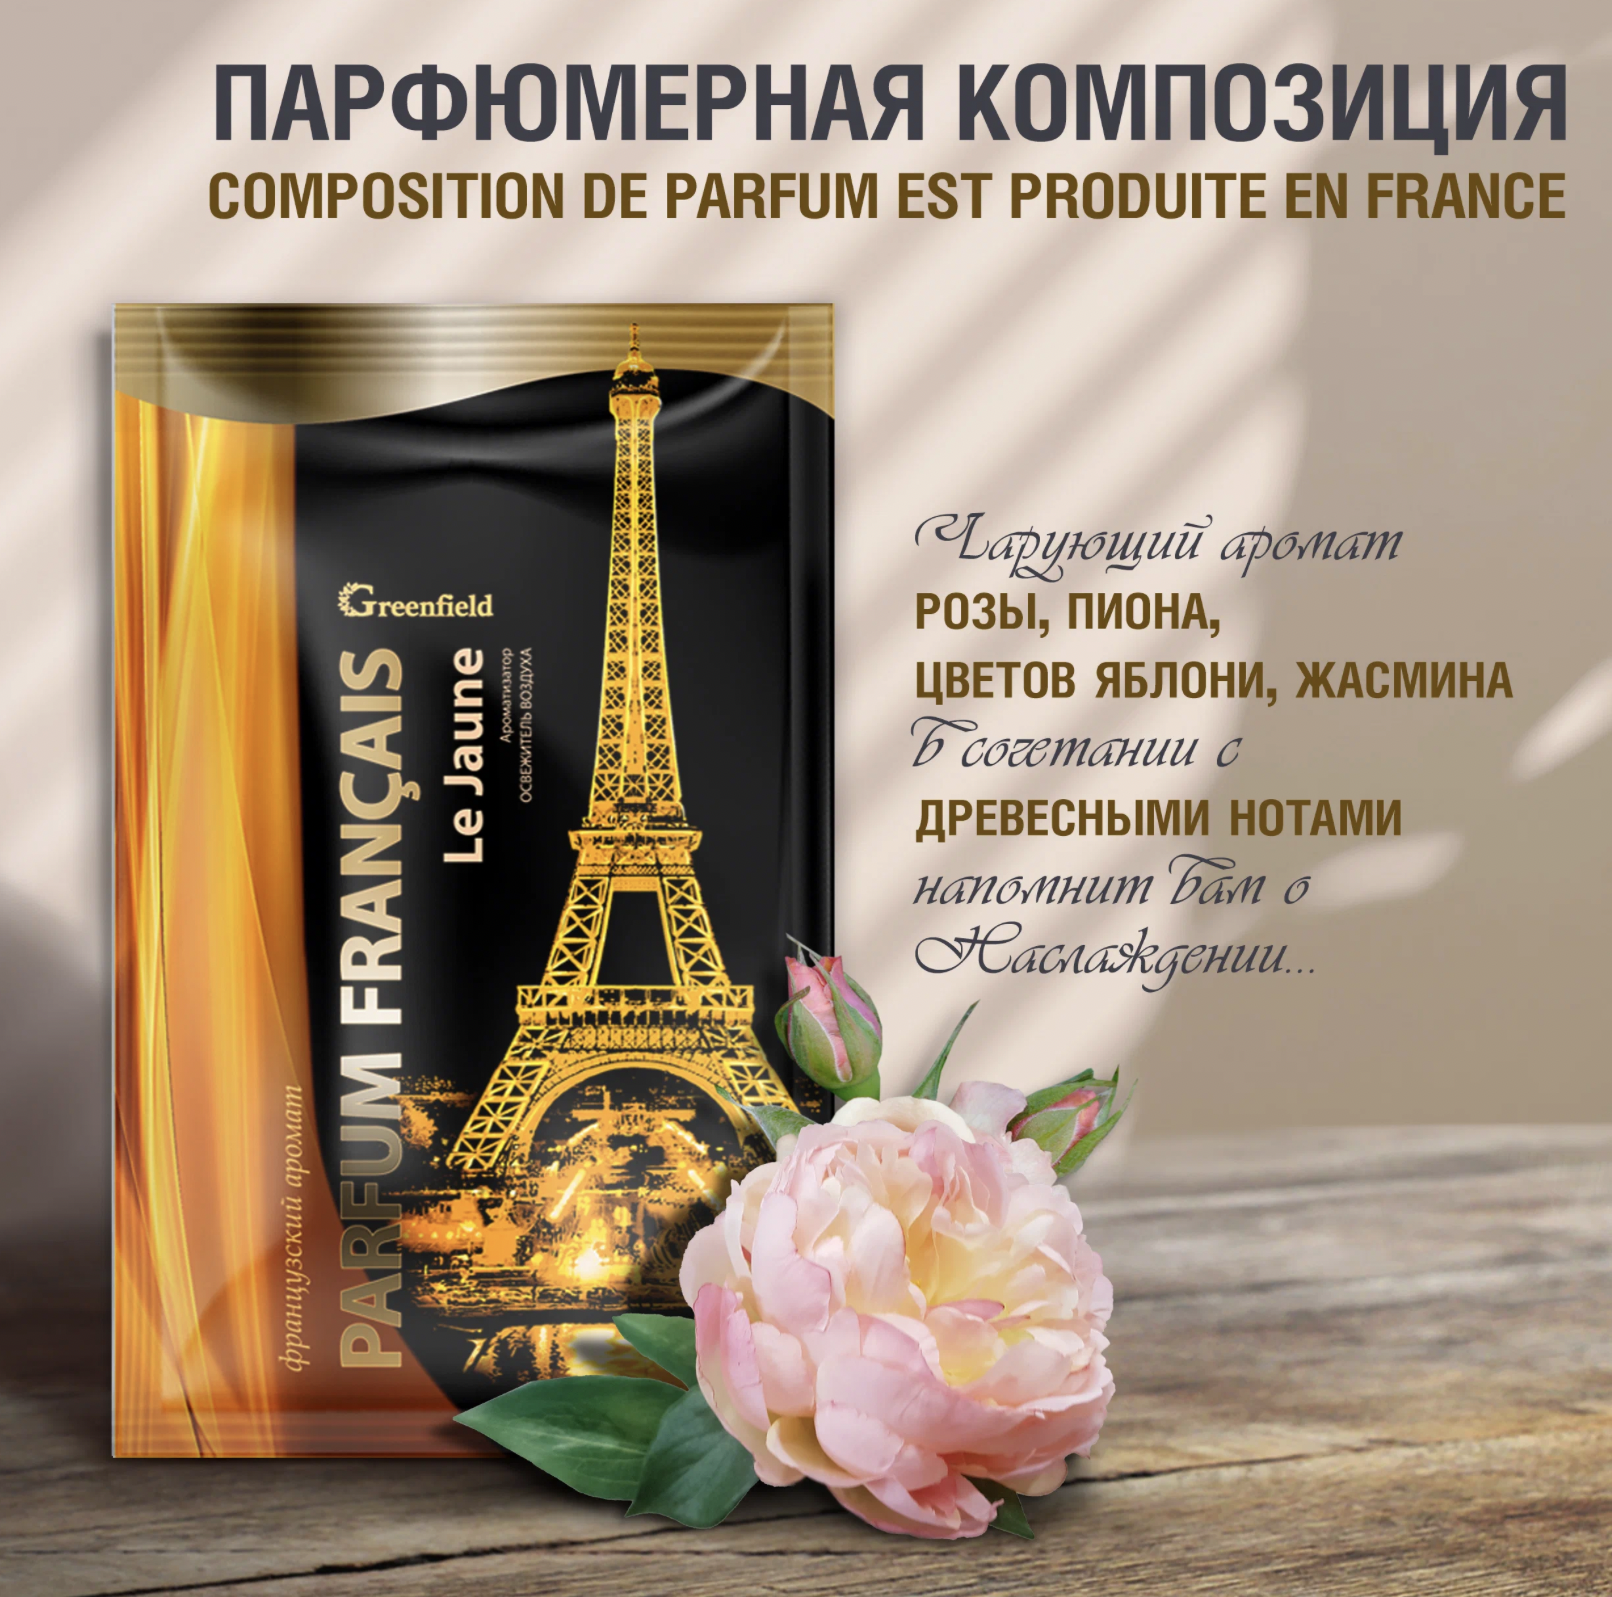   / Greenfield    Parfum Francais Le Jaune   20 